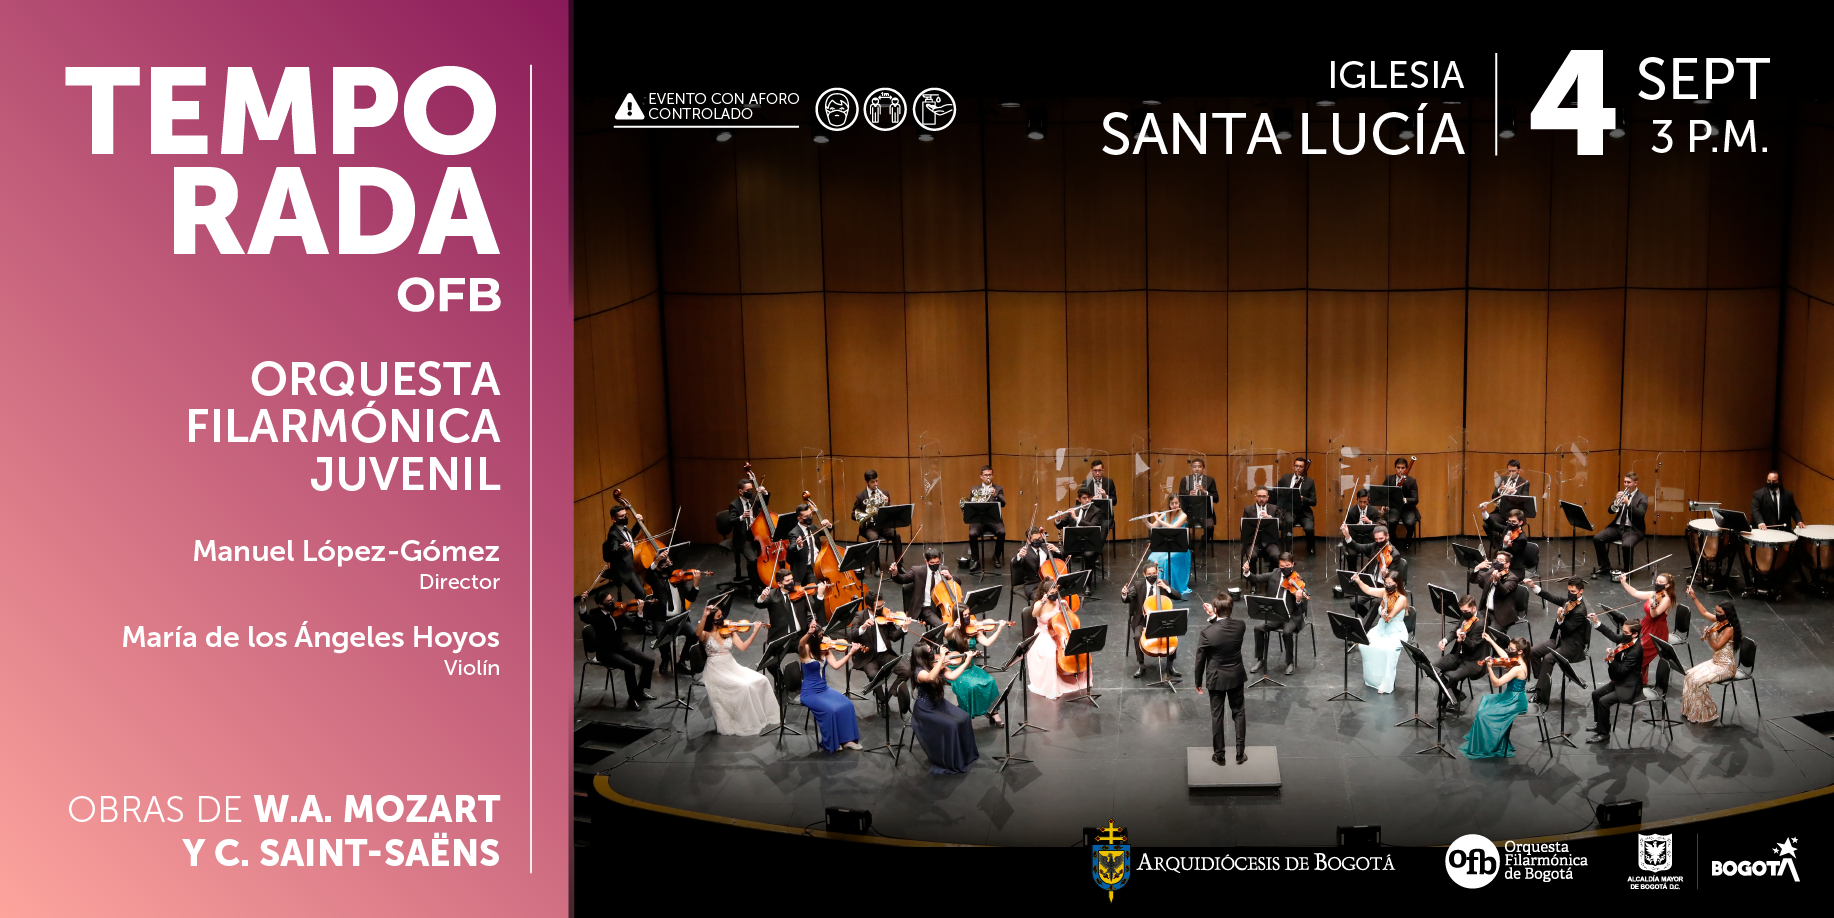 La Orquesta Filarmónica Juvenil regresa a la Iglesia Santa Lucia, bajo la  dirección del maestro Manuel López-Gómez con un maravilloso concierto. ⋆  Orquesta Filarmónica de Bogotá